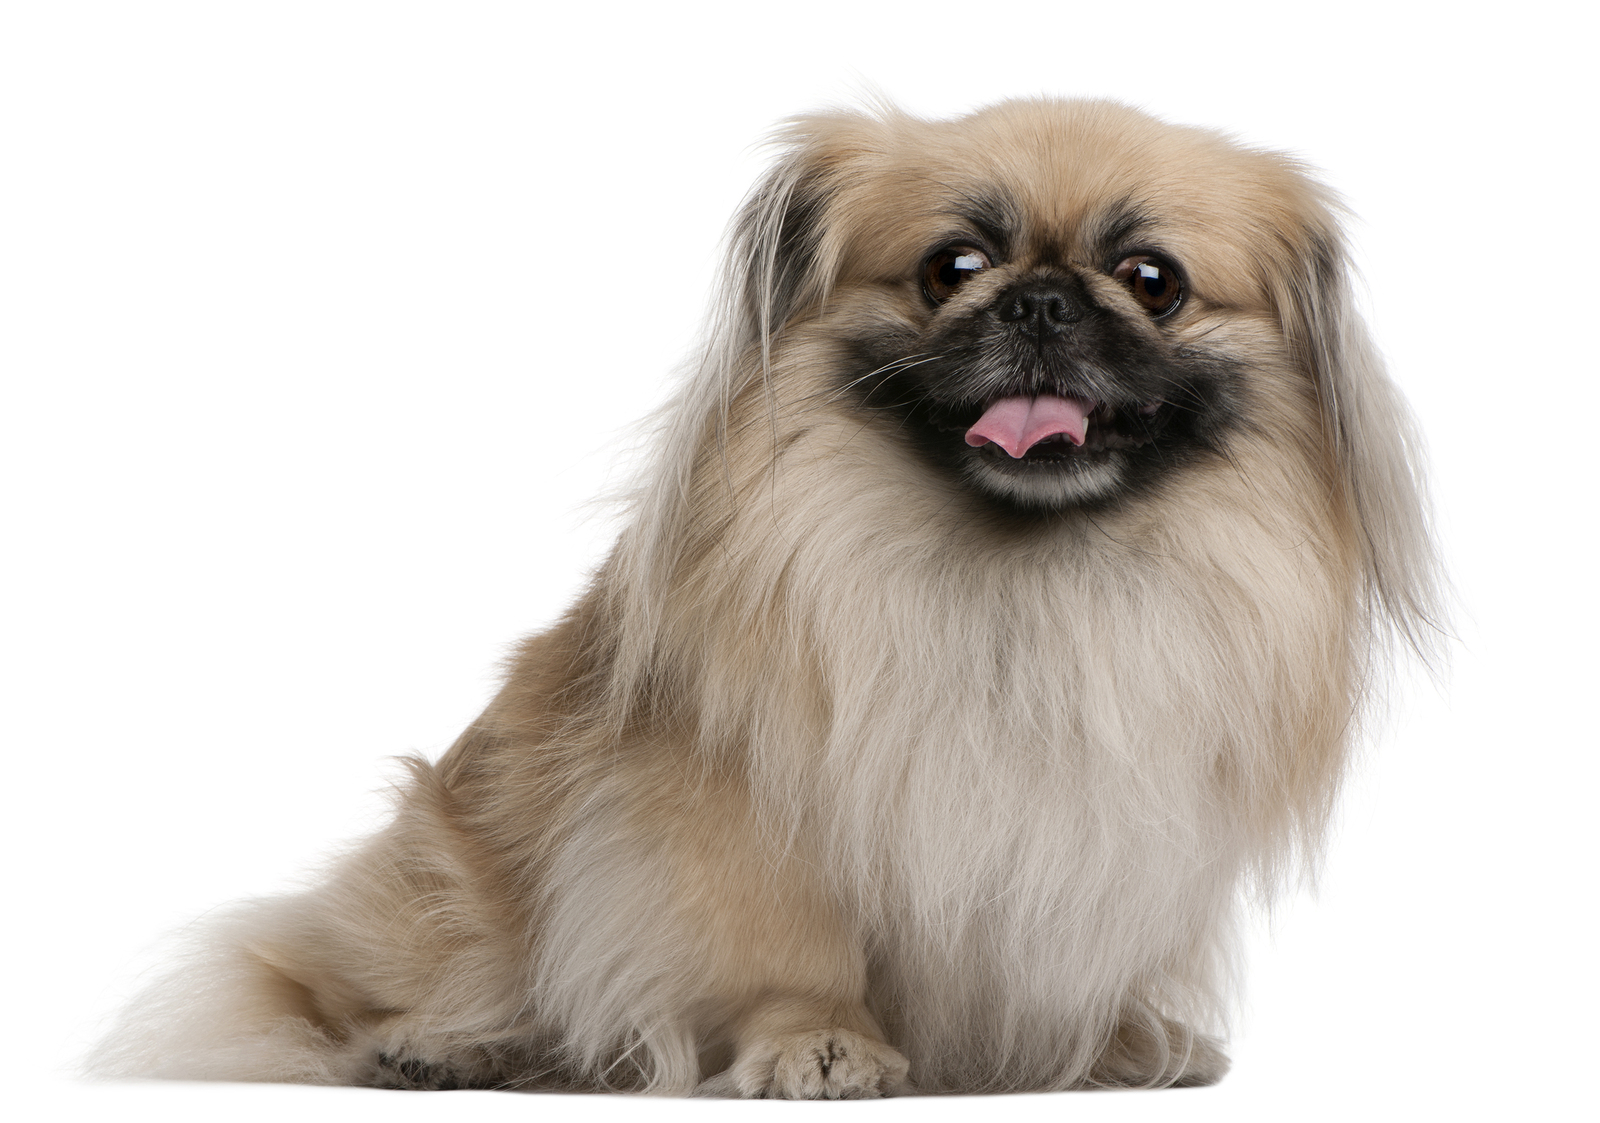 Pekingese Dog Facts Breed Information And Care Tips Dogslife Dog Breeds Magazine